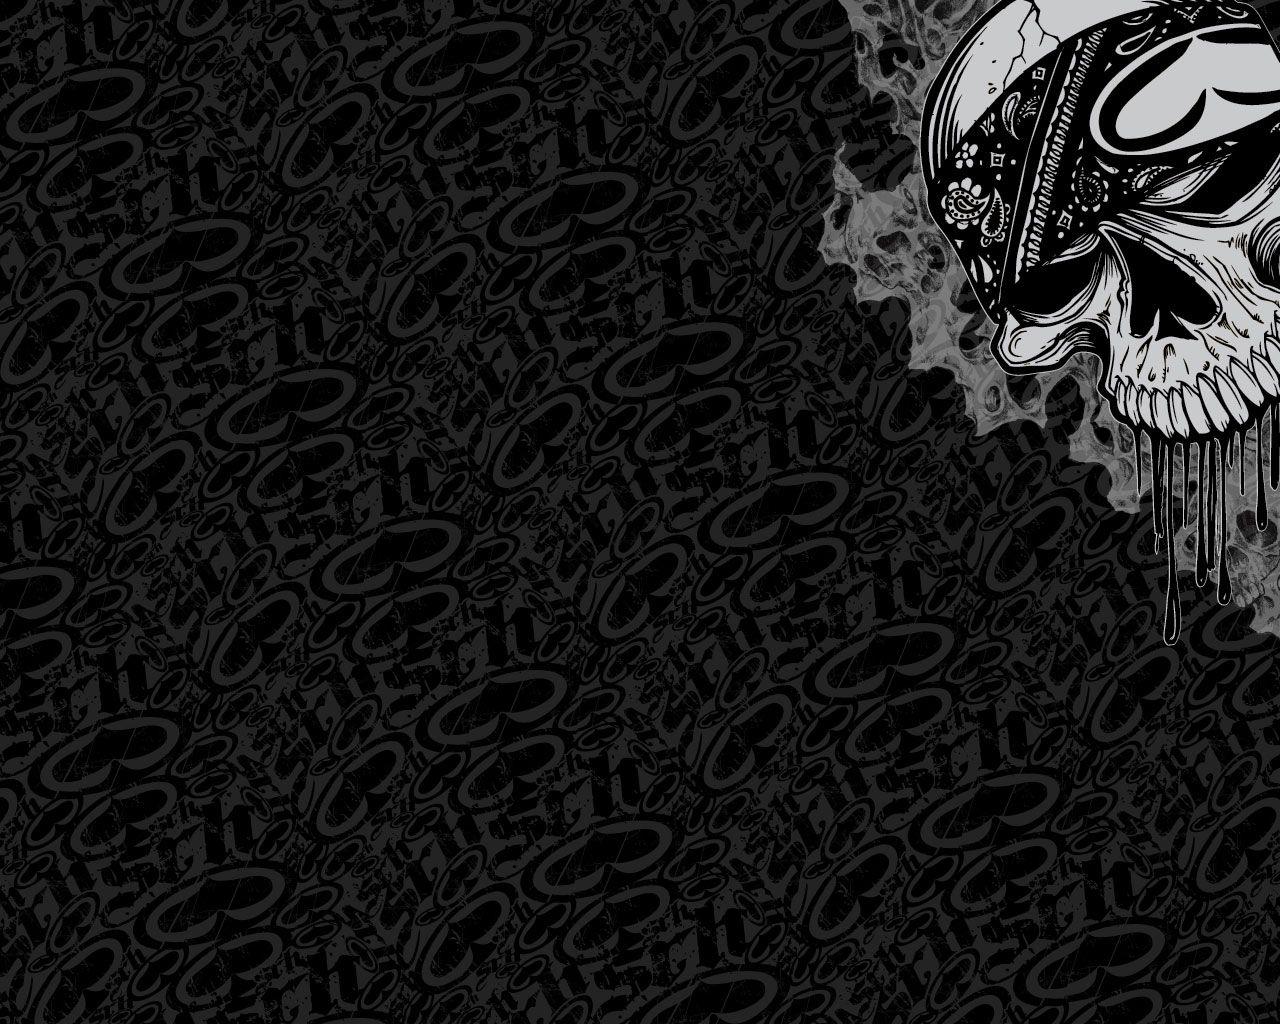 Metal Mulisha Rockstar HD wallpaper  Pxfuel